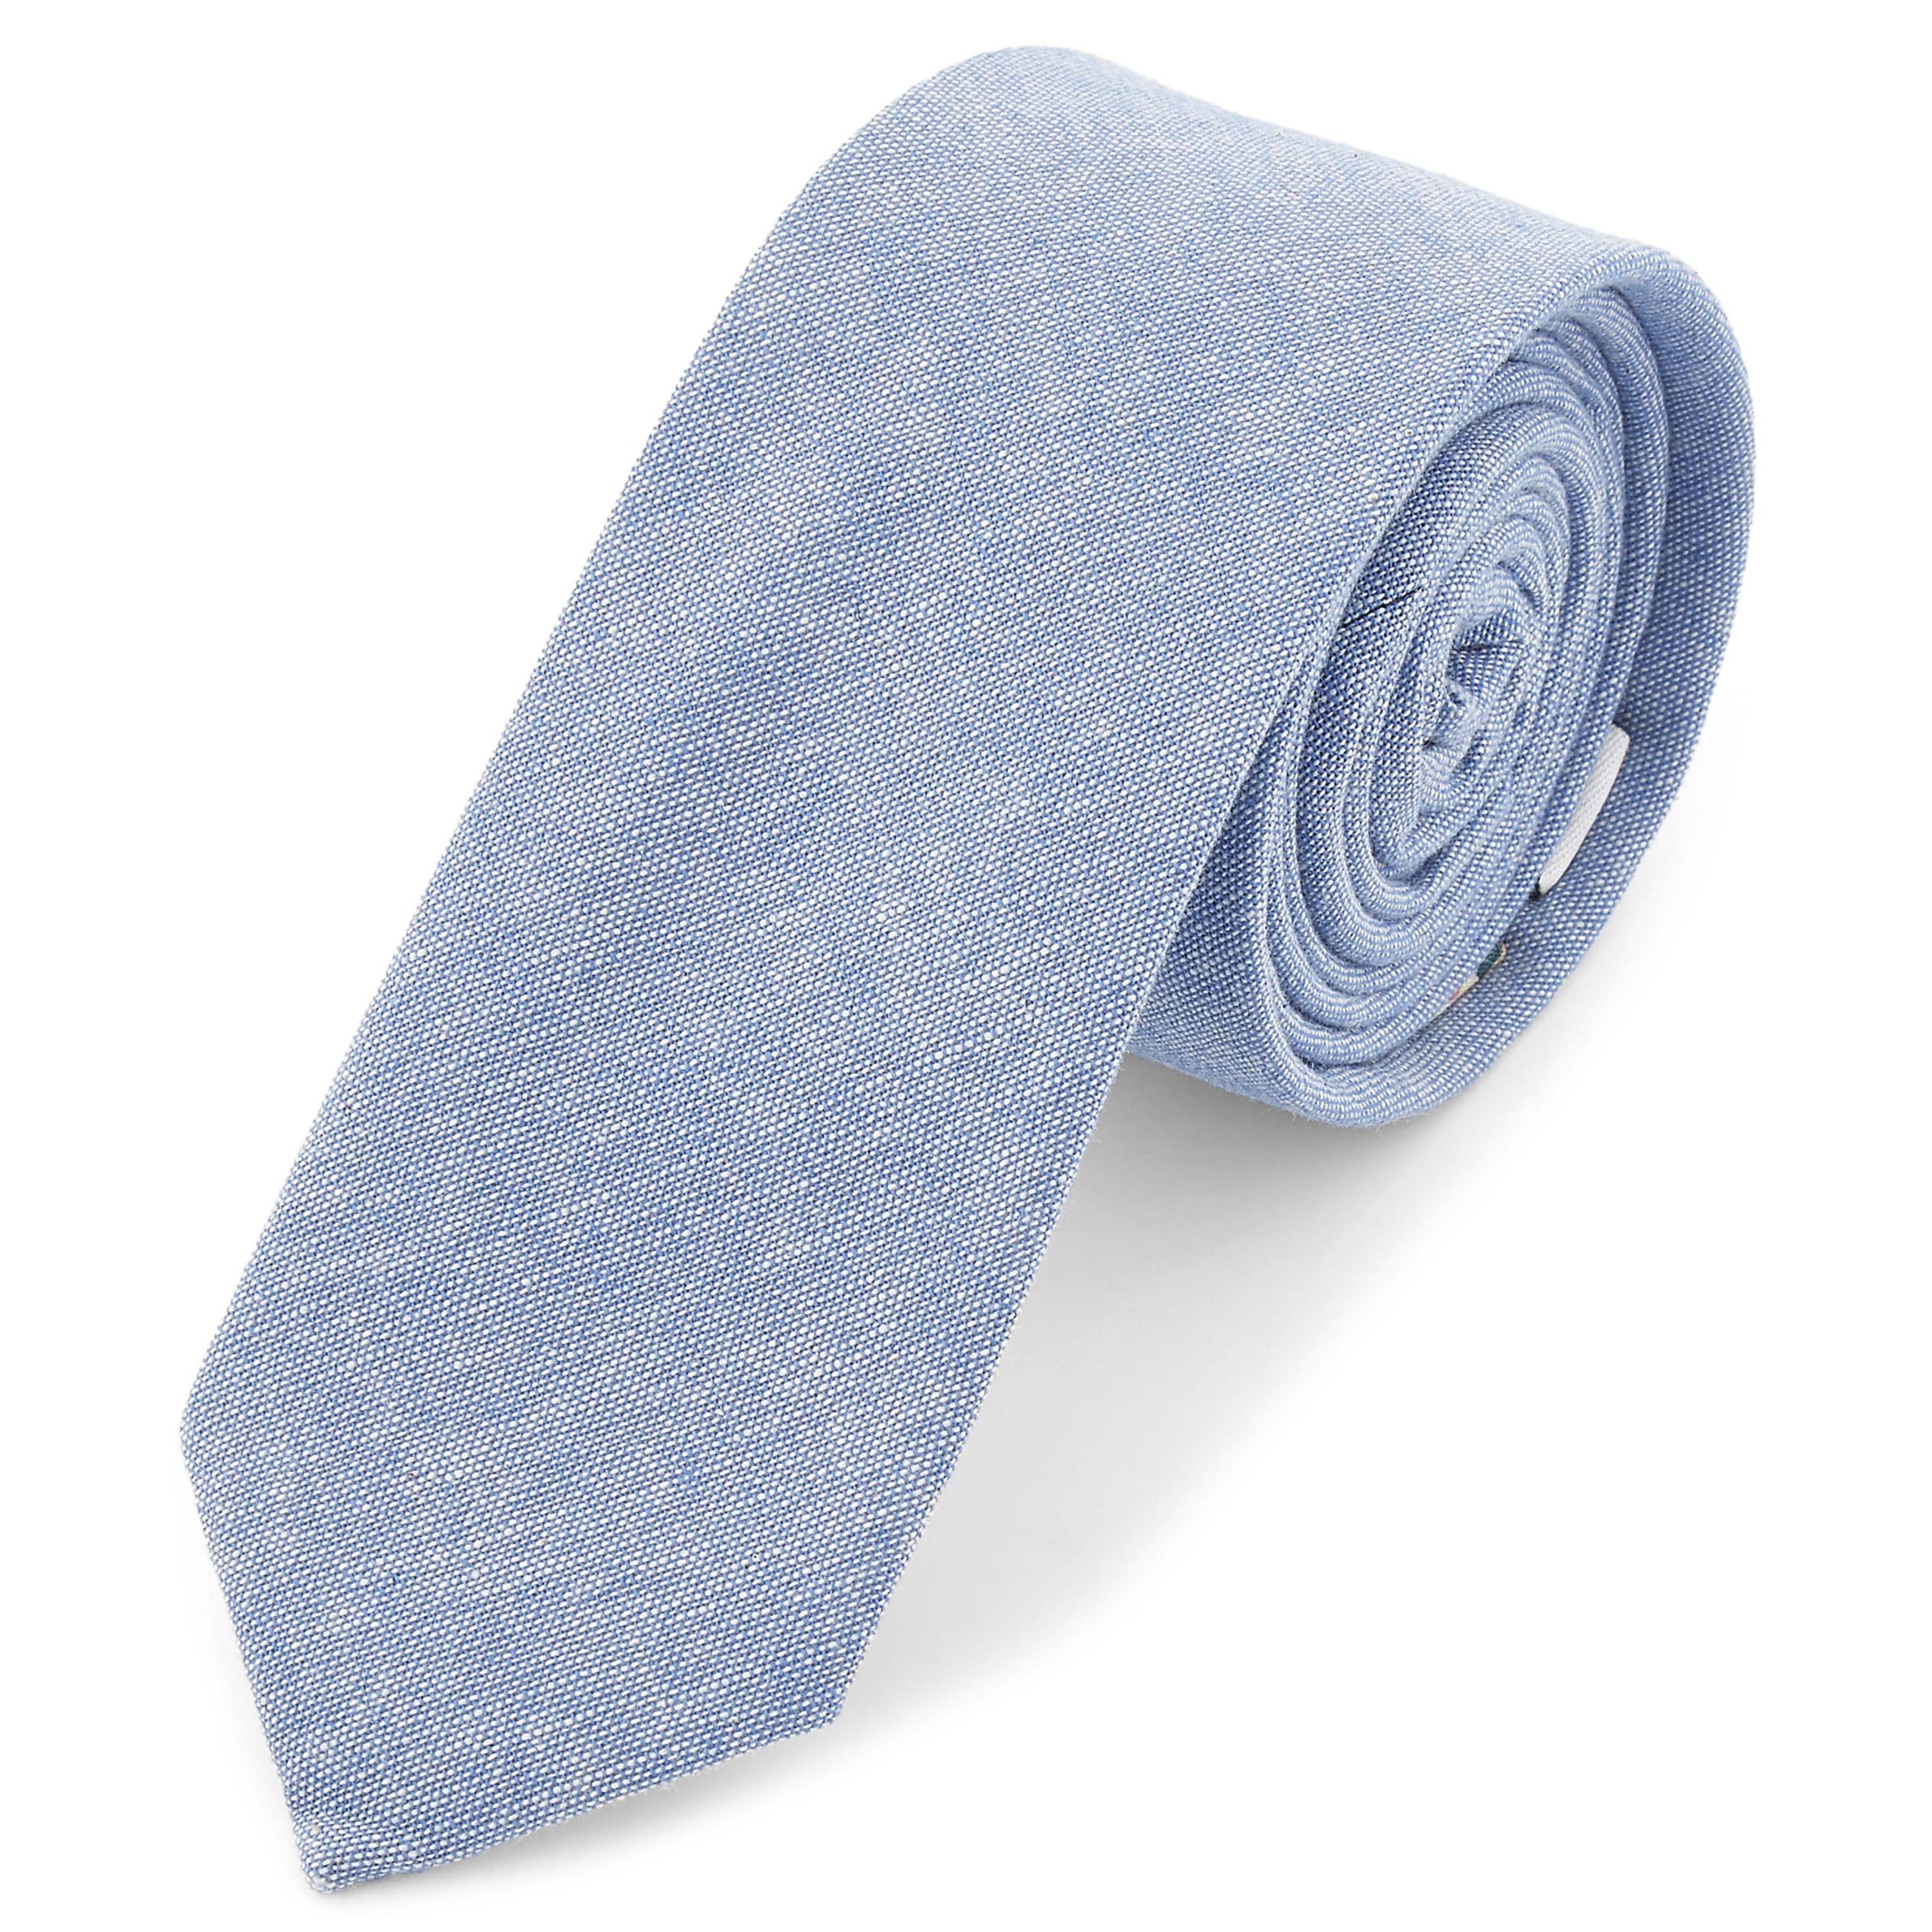 Halványkék nyakkendő